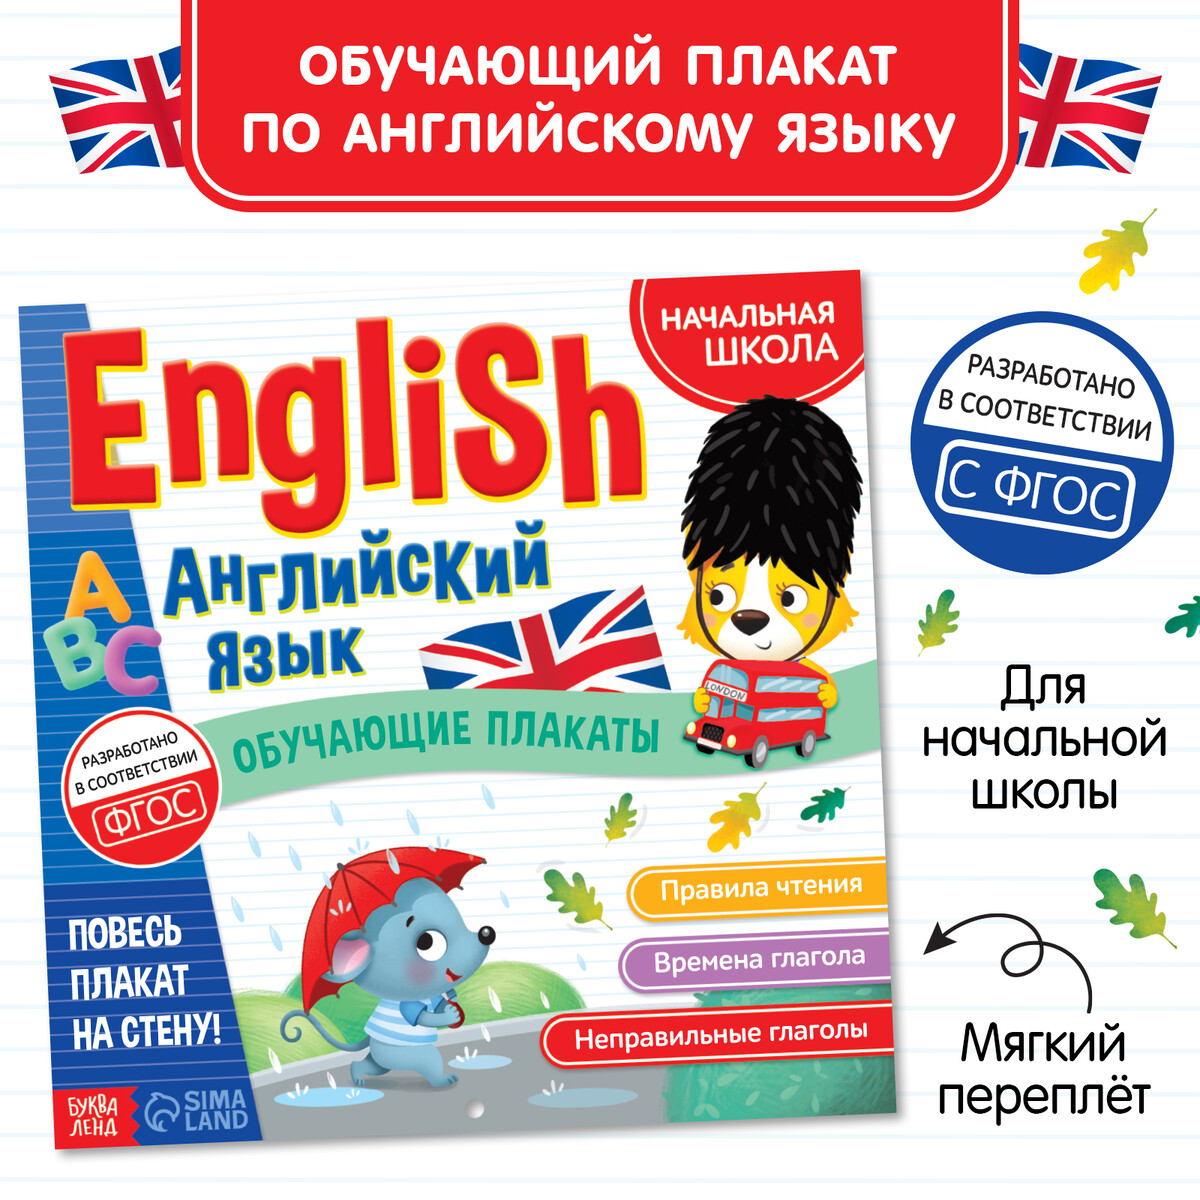 Обучающие плакаты обучающий набор банда умников ум118 плакаты русский язык 8 шт для детей от 7 лет